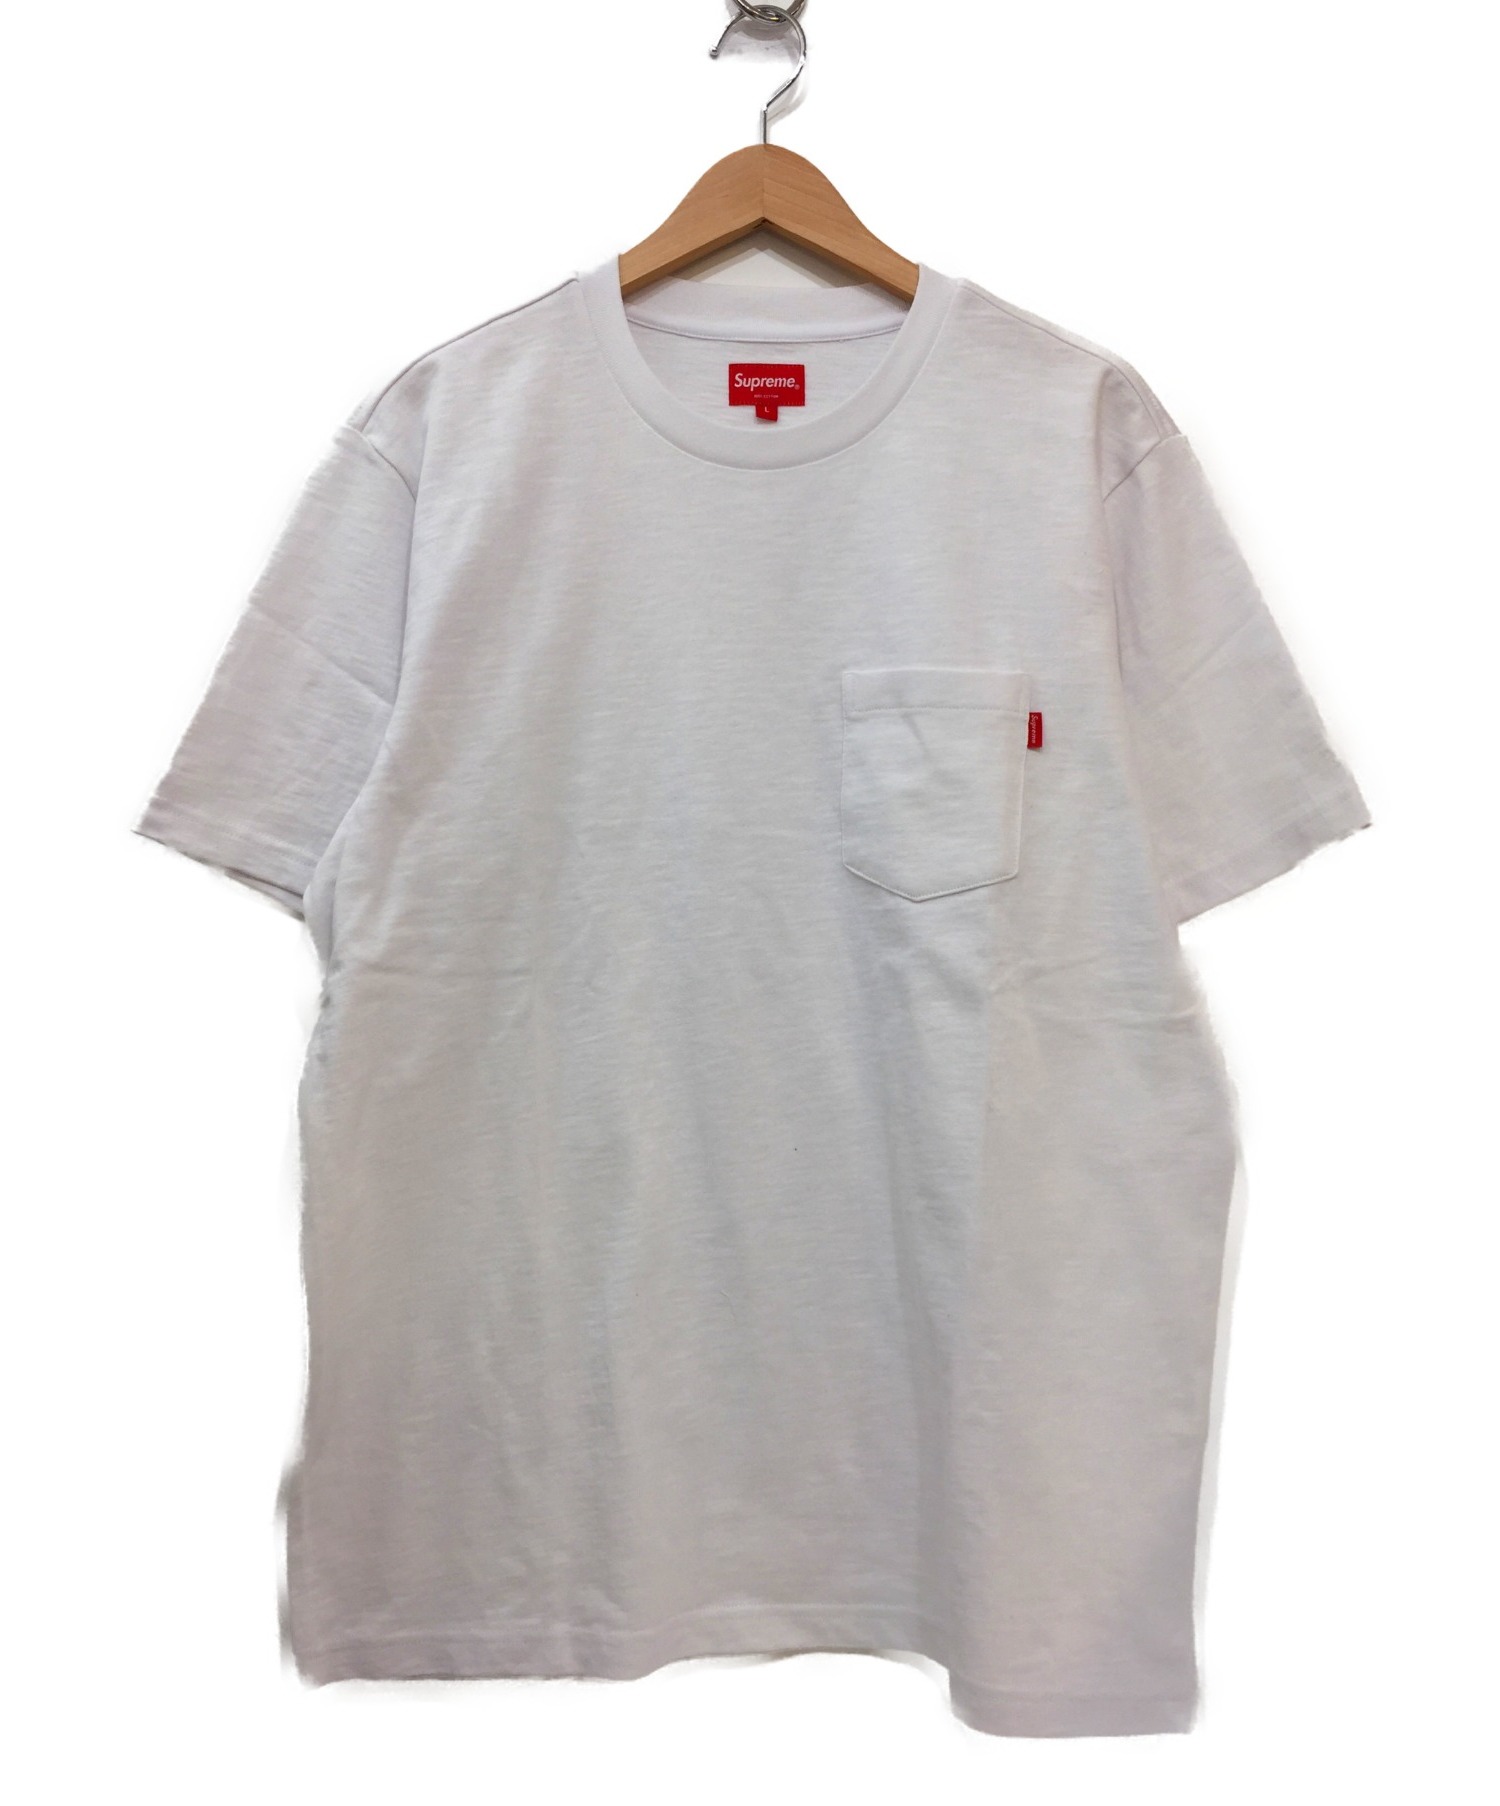 【中古・古着通販】Supreme (シュプリーム) ポケットTシャツ ホワイト×レッド サイズ:L 19SS S/S POCKET TEE